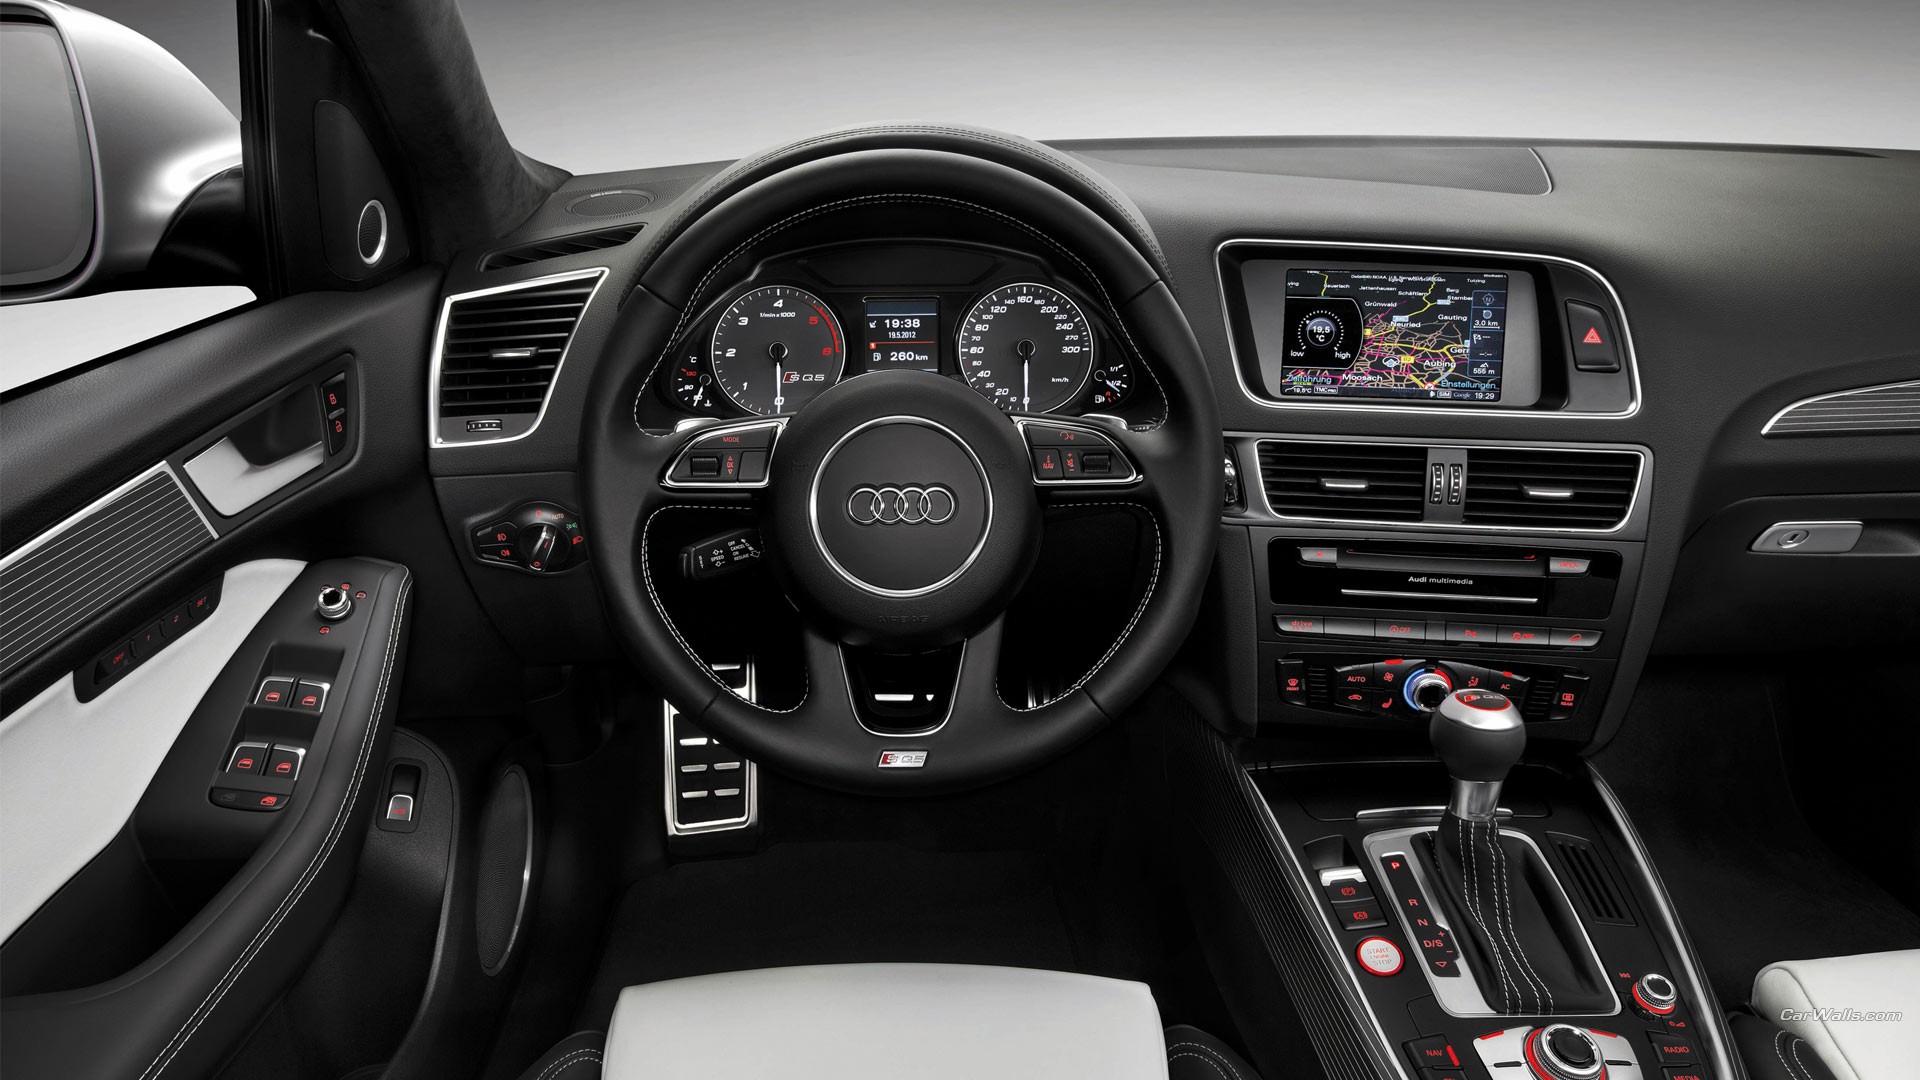 General 1920x1080 Audi SQ5 car car interior steering wheel Audi vehicle